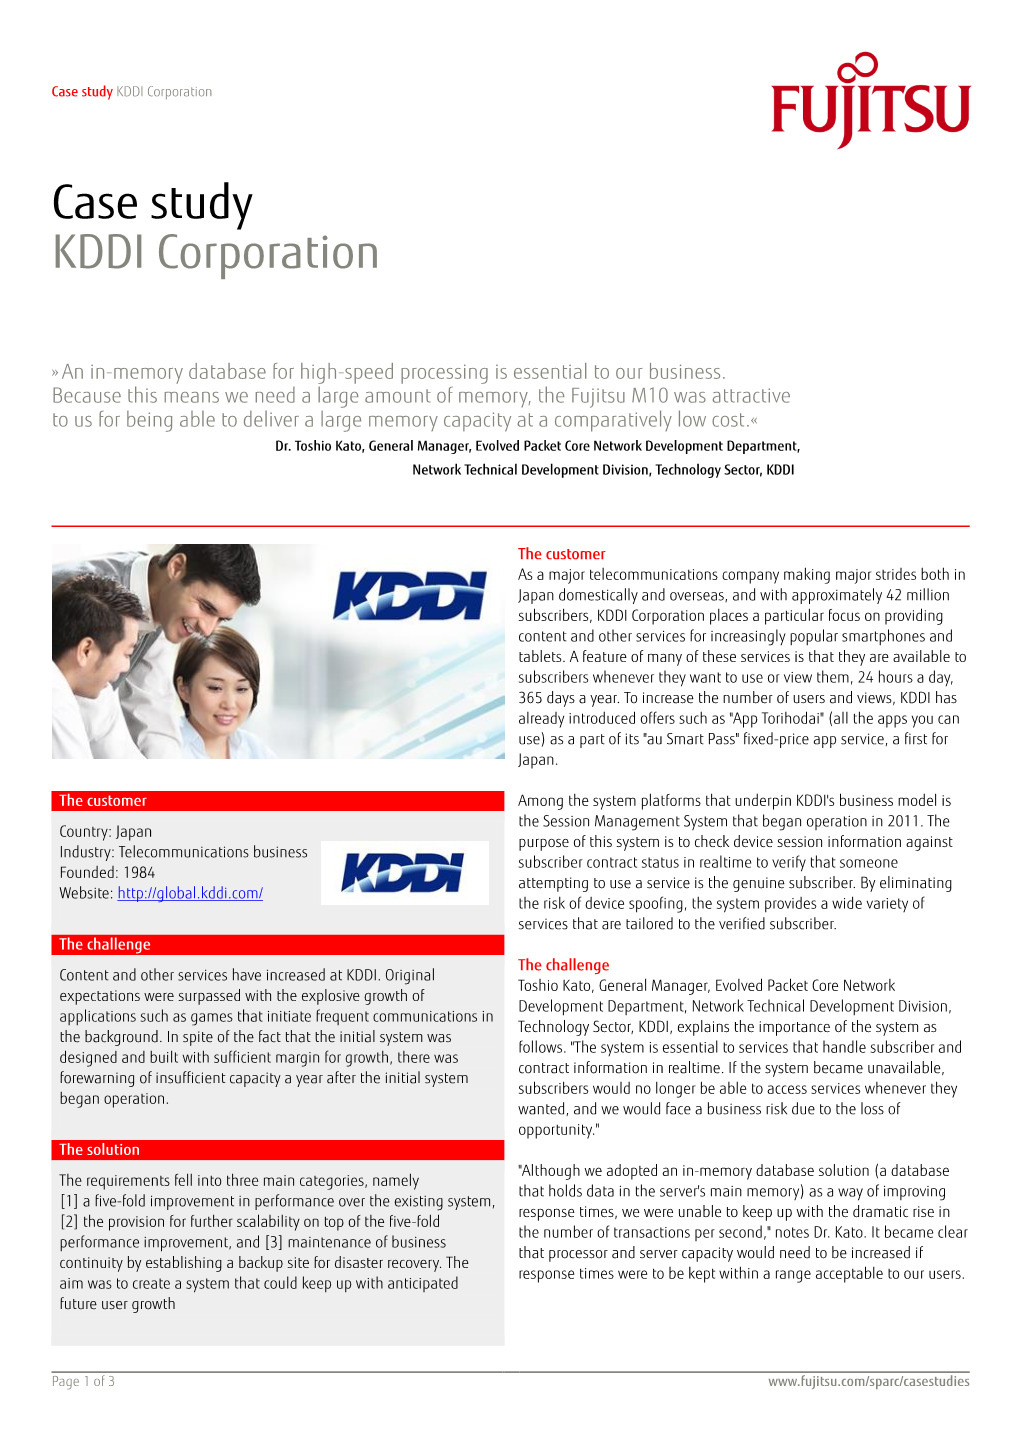 Case Study KDDI Corporation